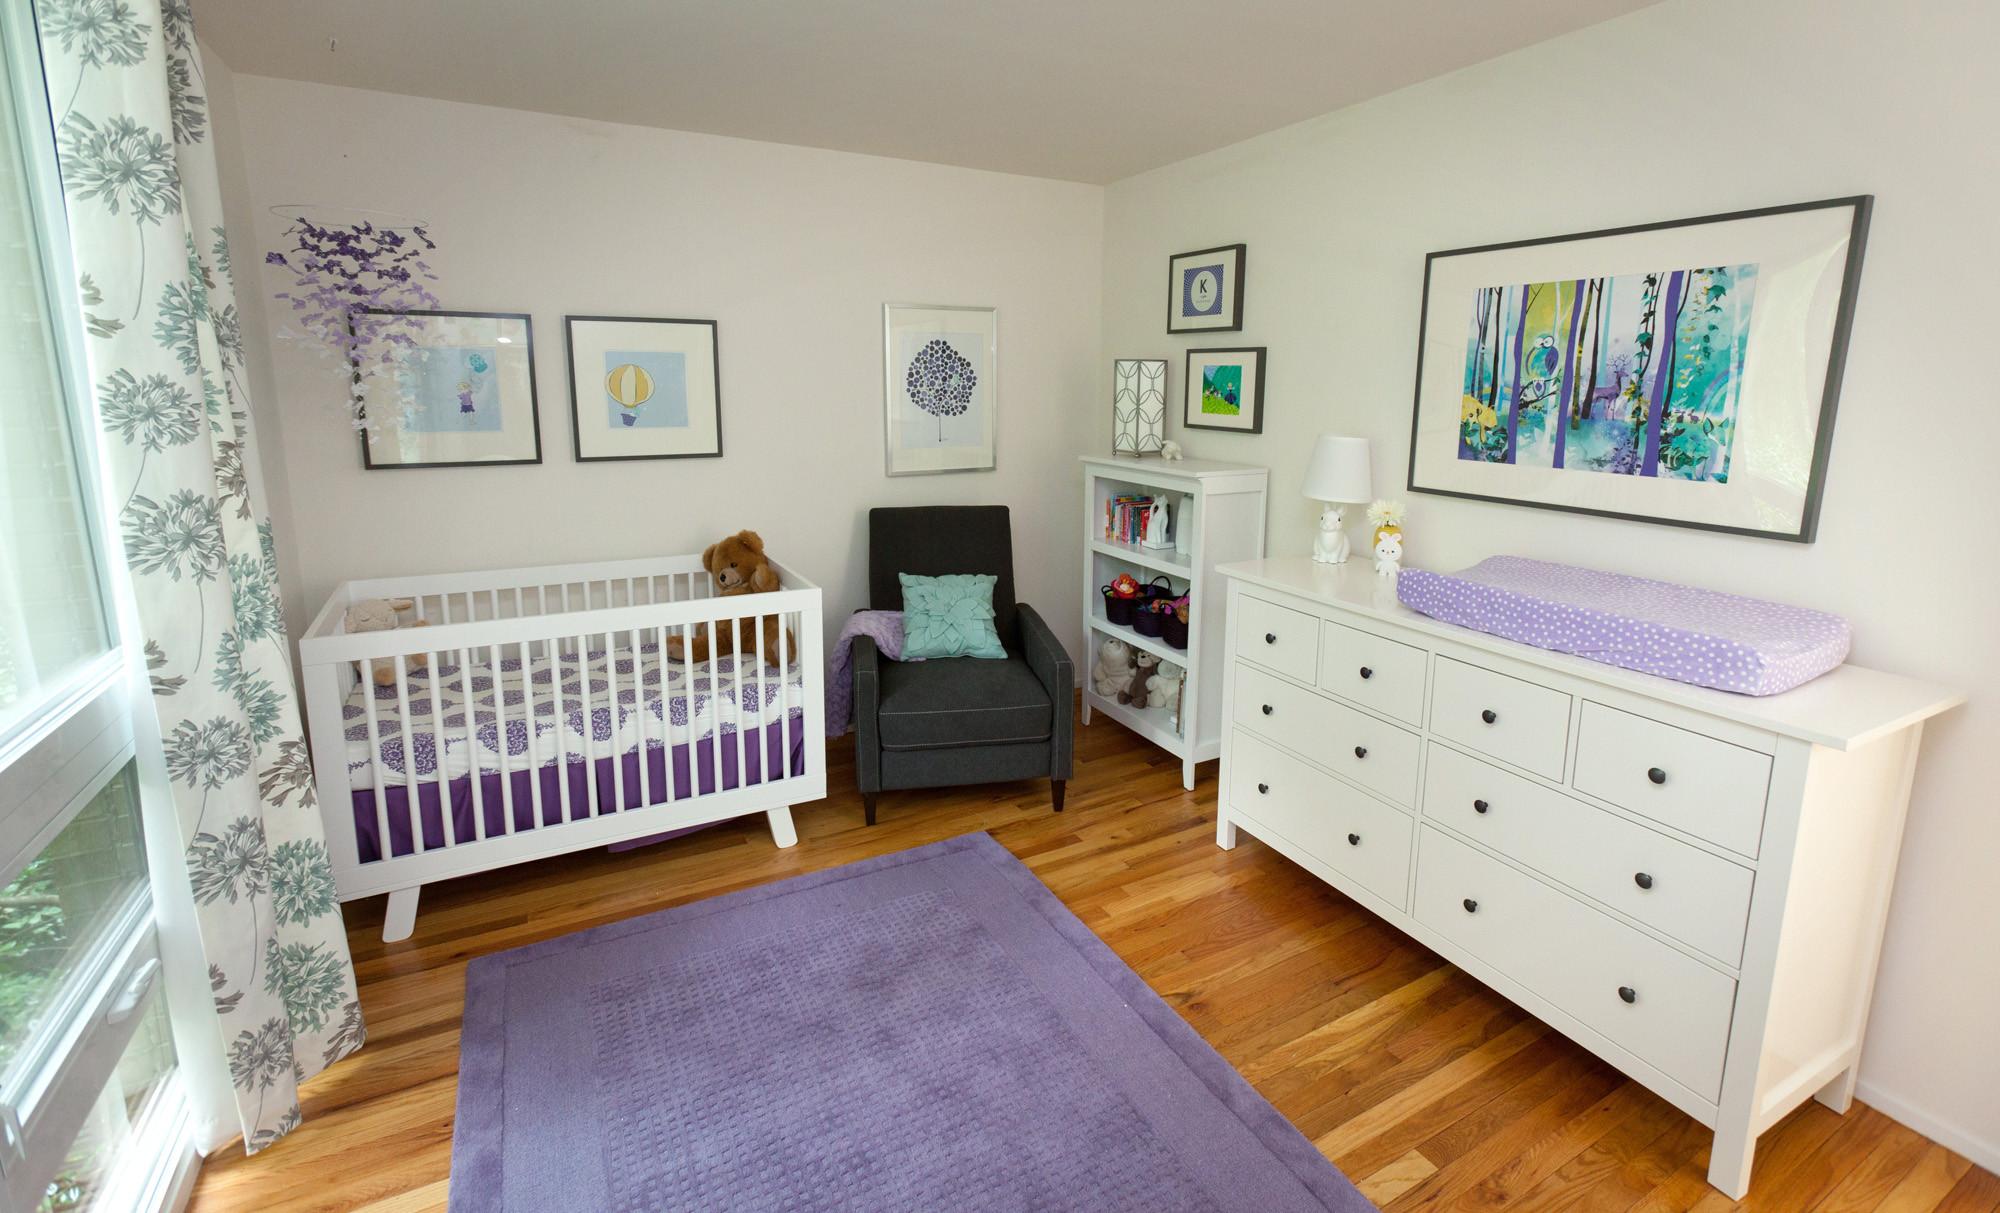 Purple Baby Room Decor
 A Purple Aqua and White Nursery Project Nursery